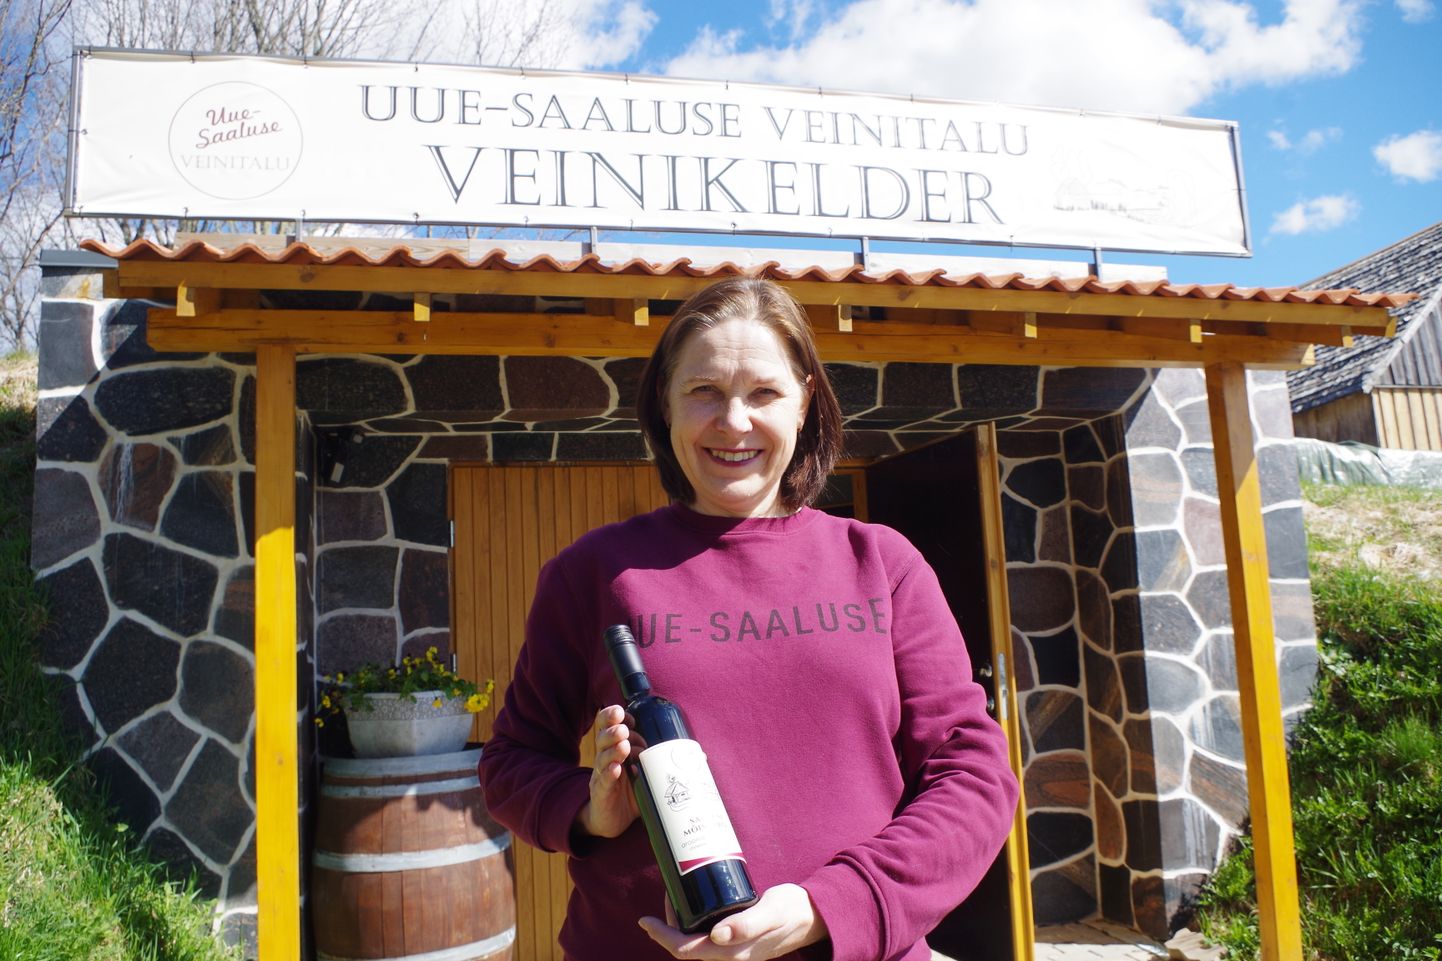 Uue-Saaluse veinitalu perenaise Maris Kivistiku sõnul hinnagul on Eesti marjaveini maine ajapikku tõusma hakanud.